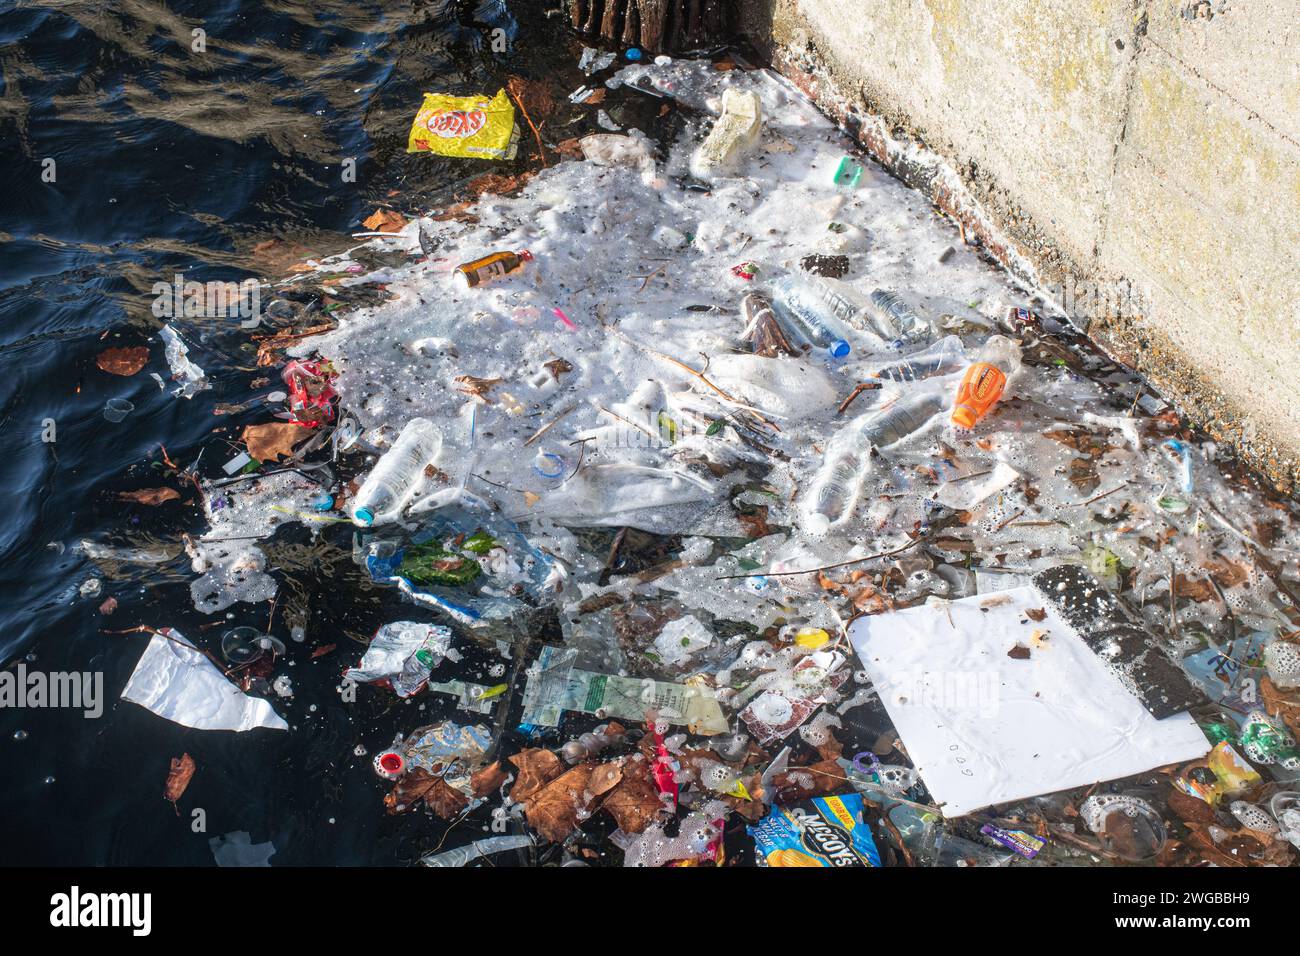 Beaucoup de déchets, en particulier les déchets plastiques dans l'eau à Millwall Dock, Isle of Dogs, Londres, Angleterre, Royaume-Uni. Concept : pollution plastique, pollution fluviale Banque D'Images